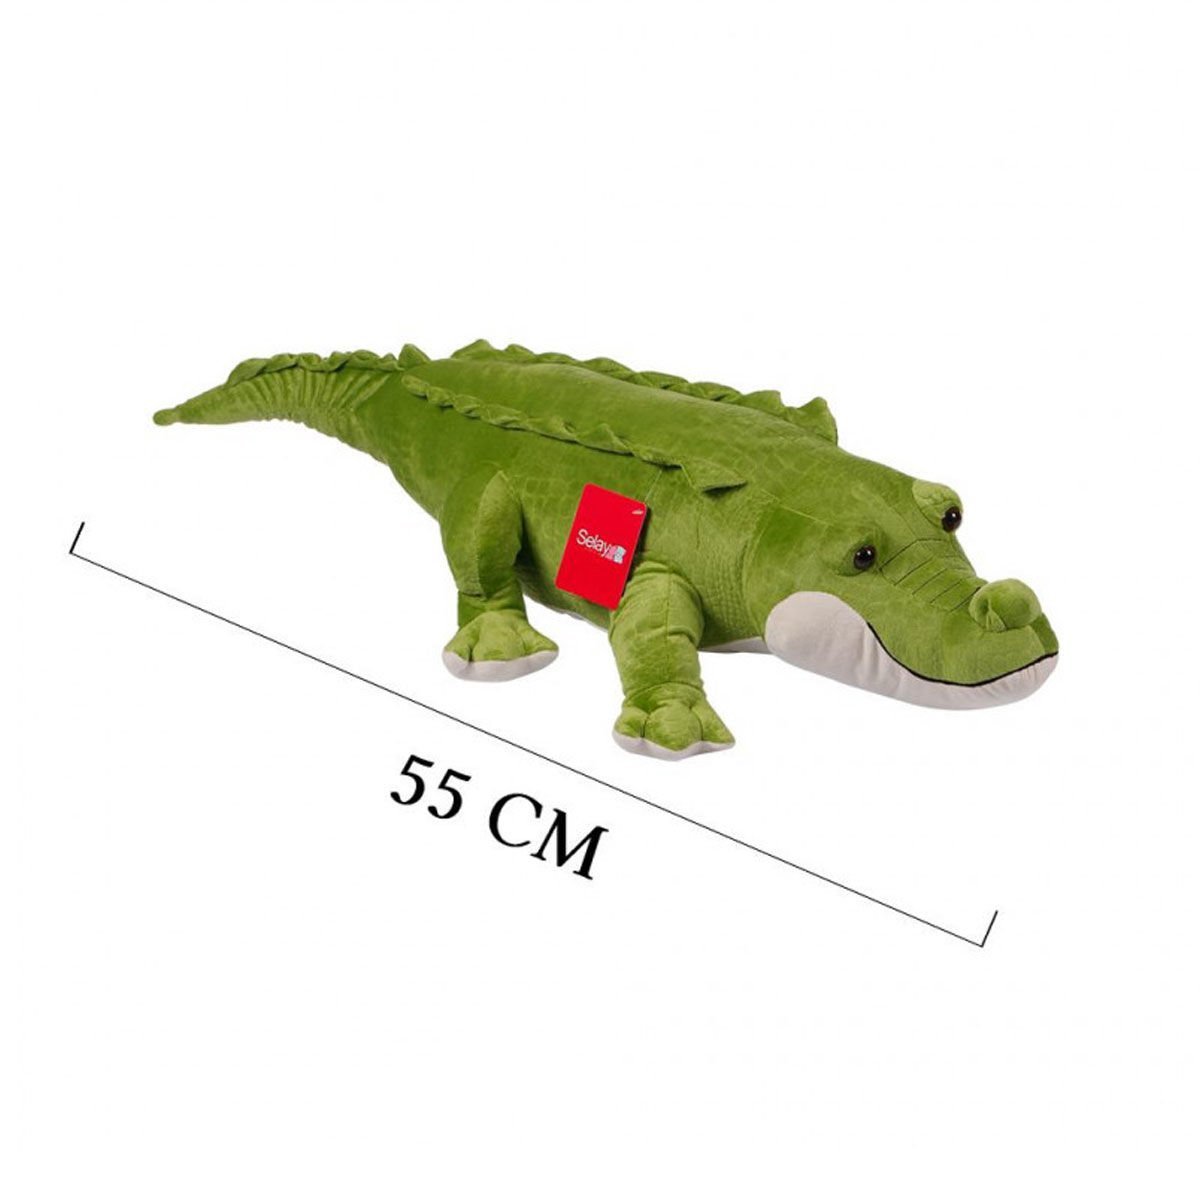 4108 Küçük Yatan Timsah 55 cm Yeşil -Selay Oyuncak